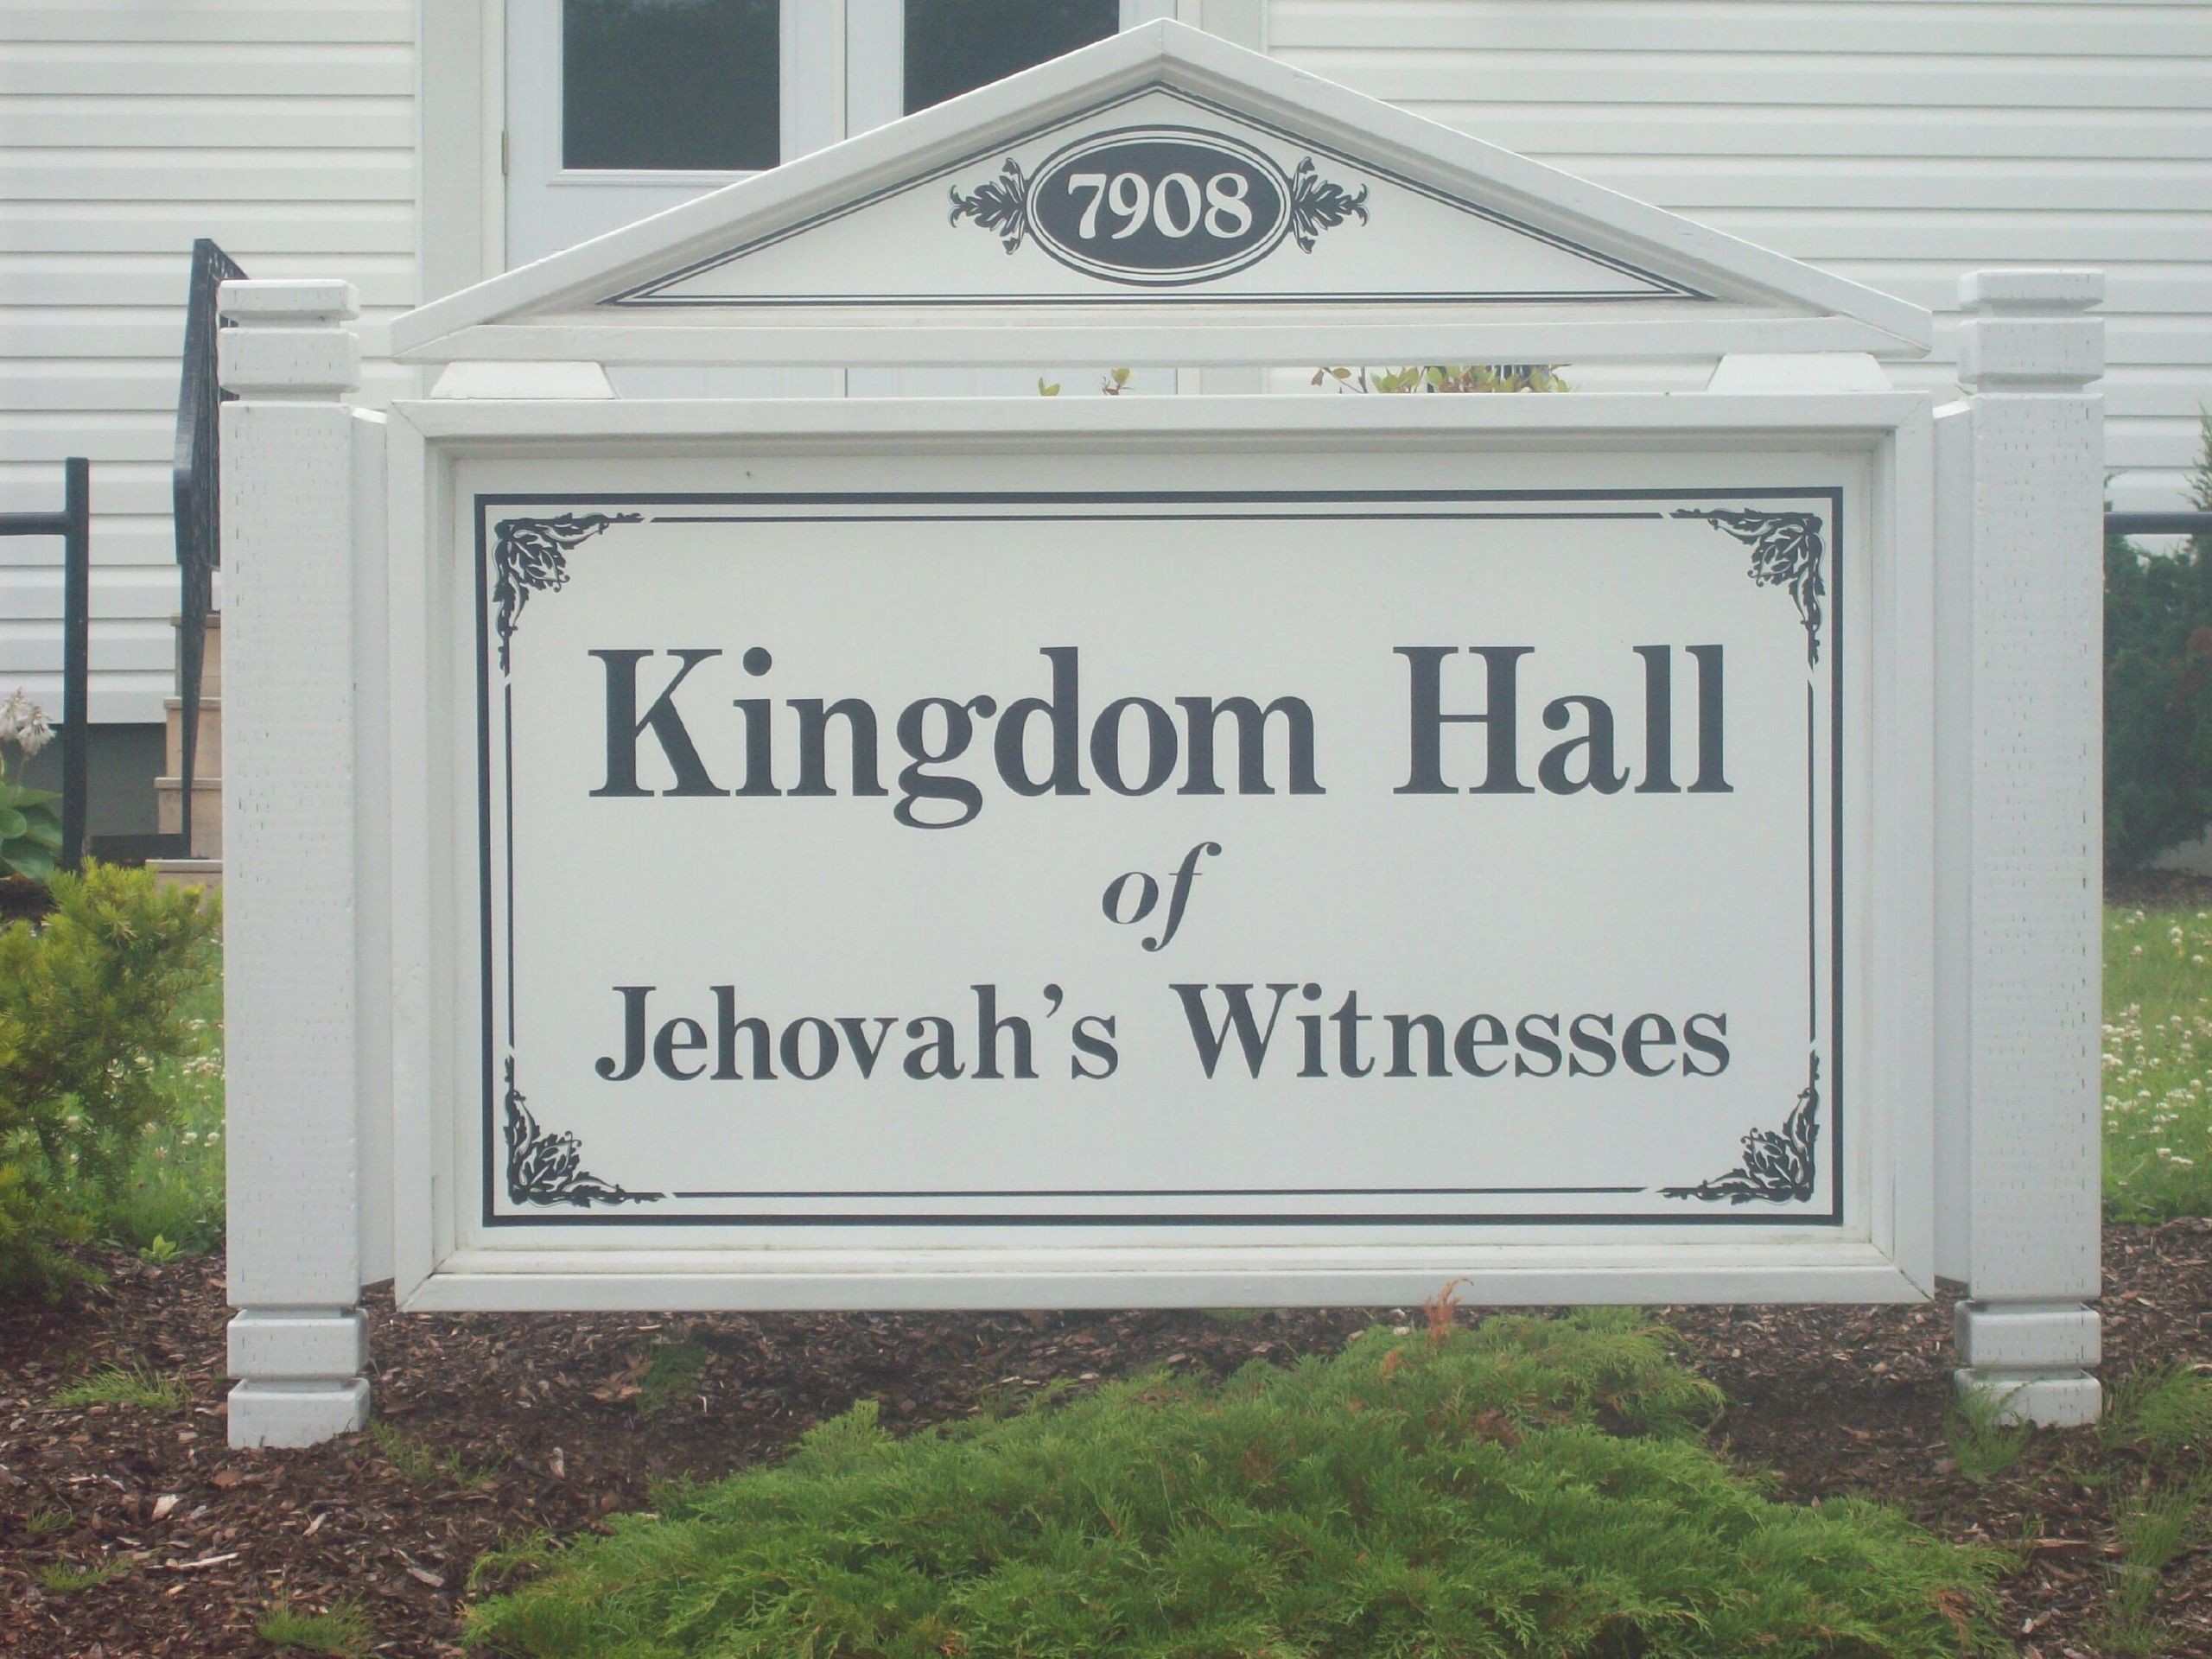 2560x1920 Kingdom Hall - Jehovah witnesses Wallpaper (30642411) - Fanpop